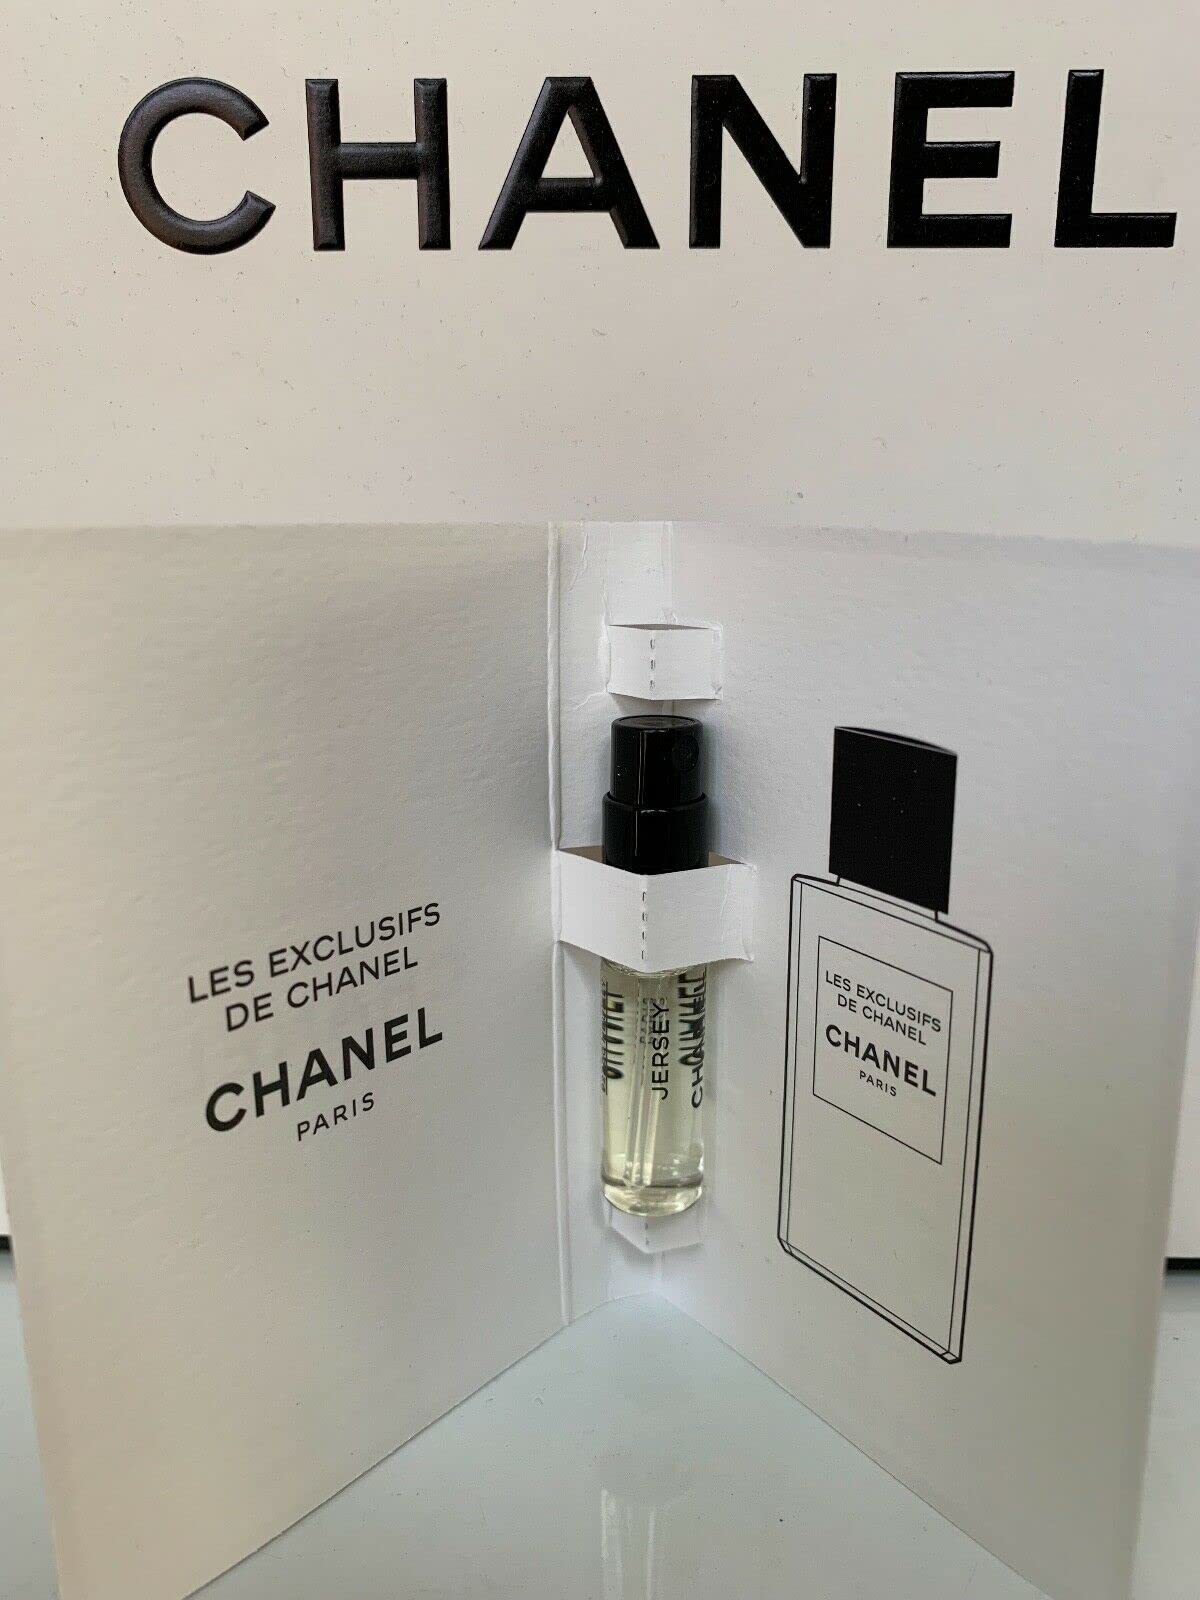 Mẫu thử nước hoa nữ Chanel Chance Eau Fraiche ống xịt 15ml EDT của Pháp    Chance xanh  Giá Sendo khuyến mãi 150000đ  Mua ngay  Tư vấn mua